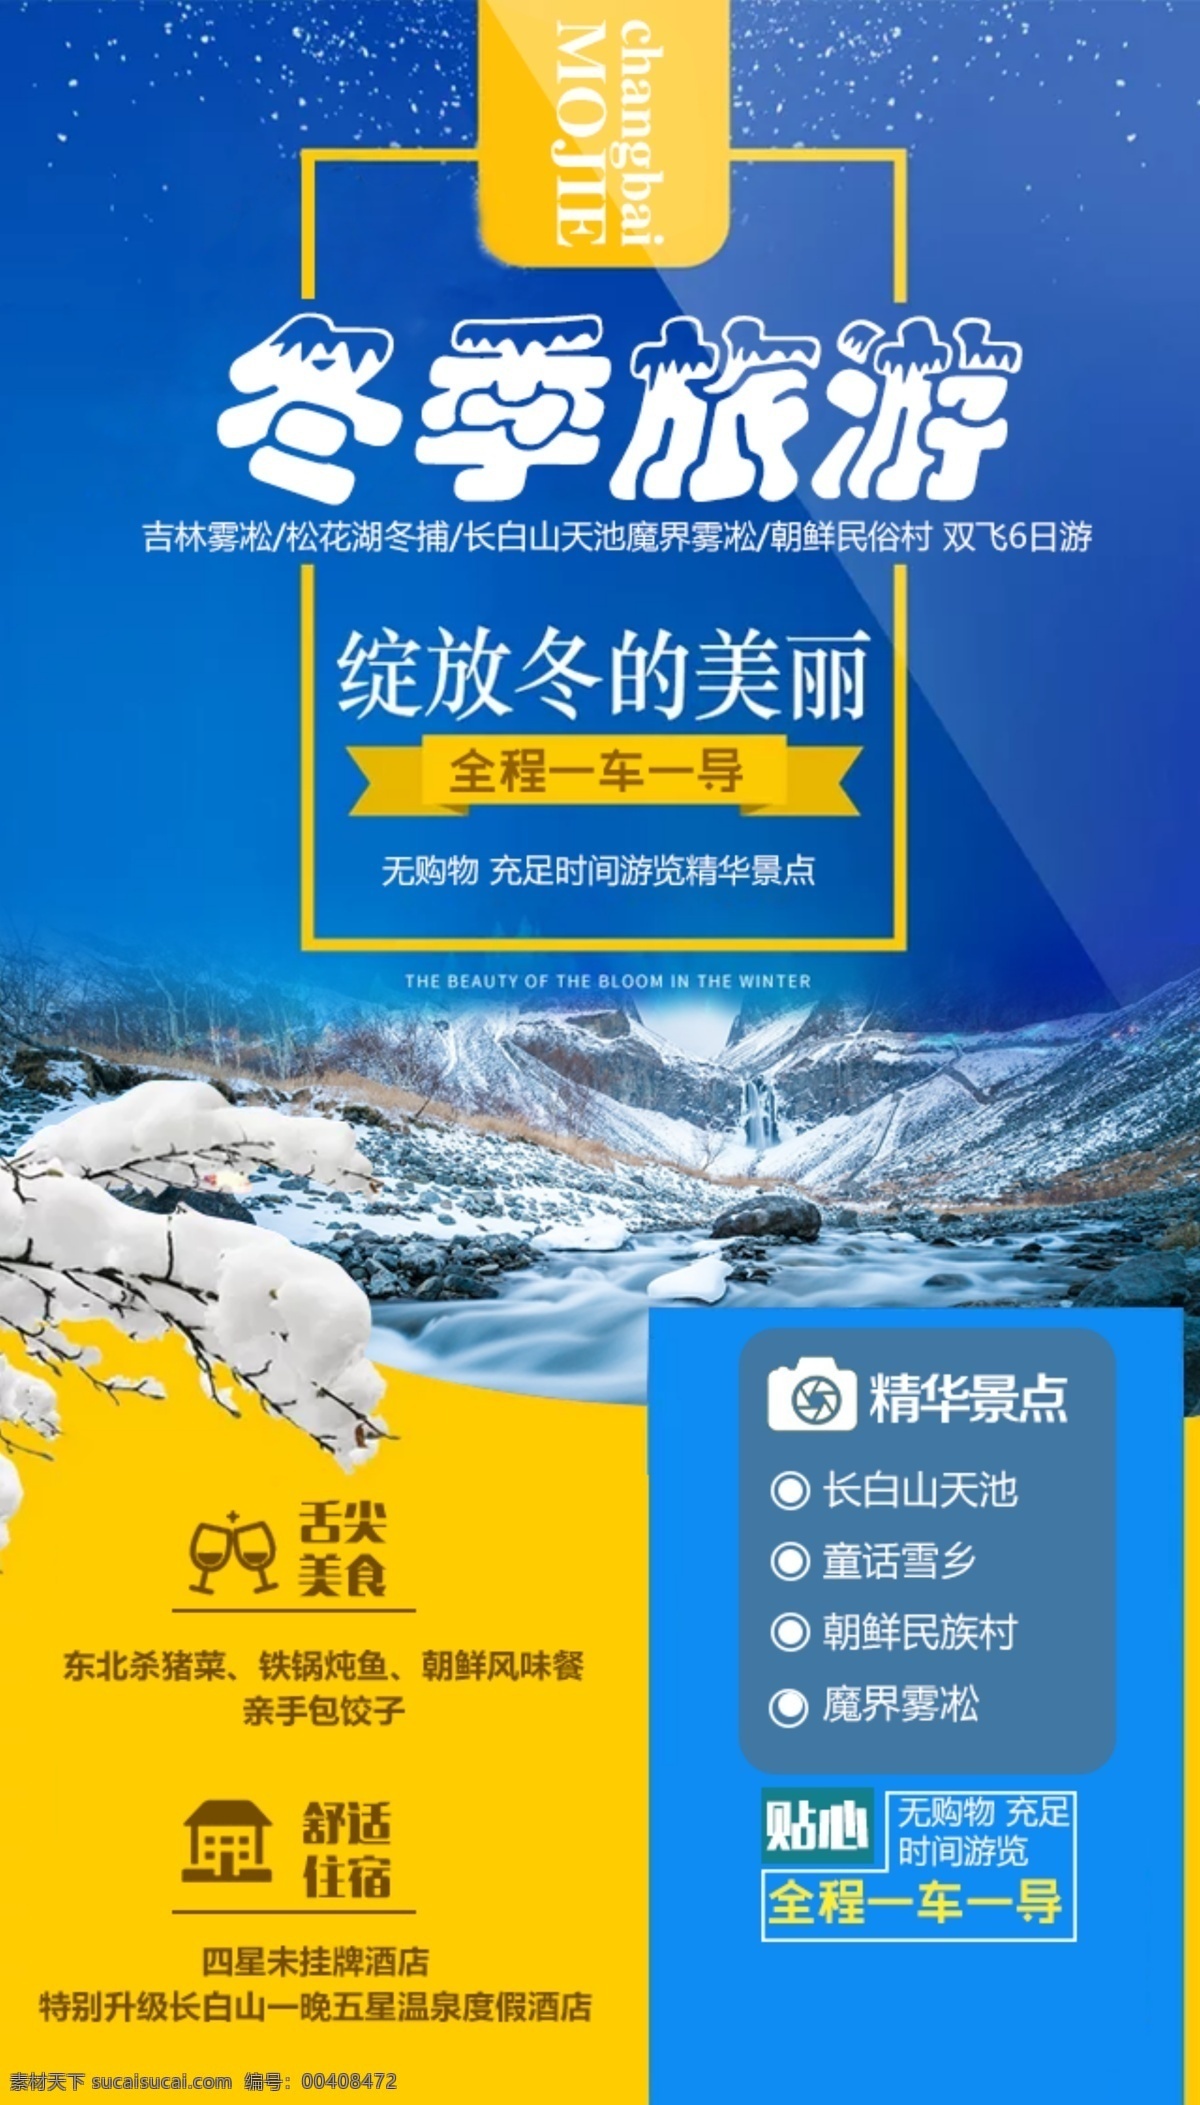 蓝色 冬季 旅游 促销 海报 雪 东北 旅游海报 促销海报